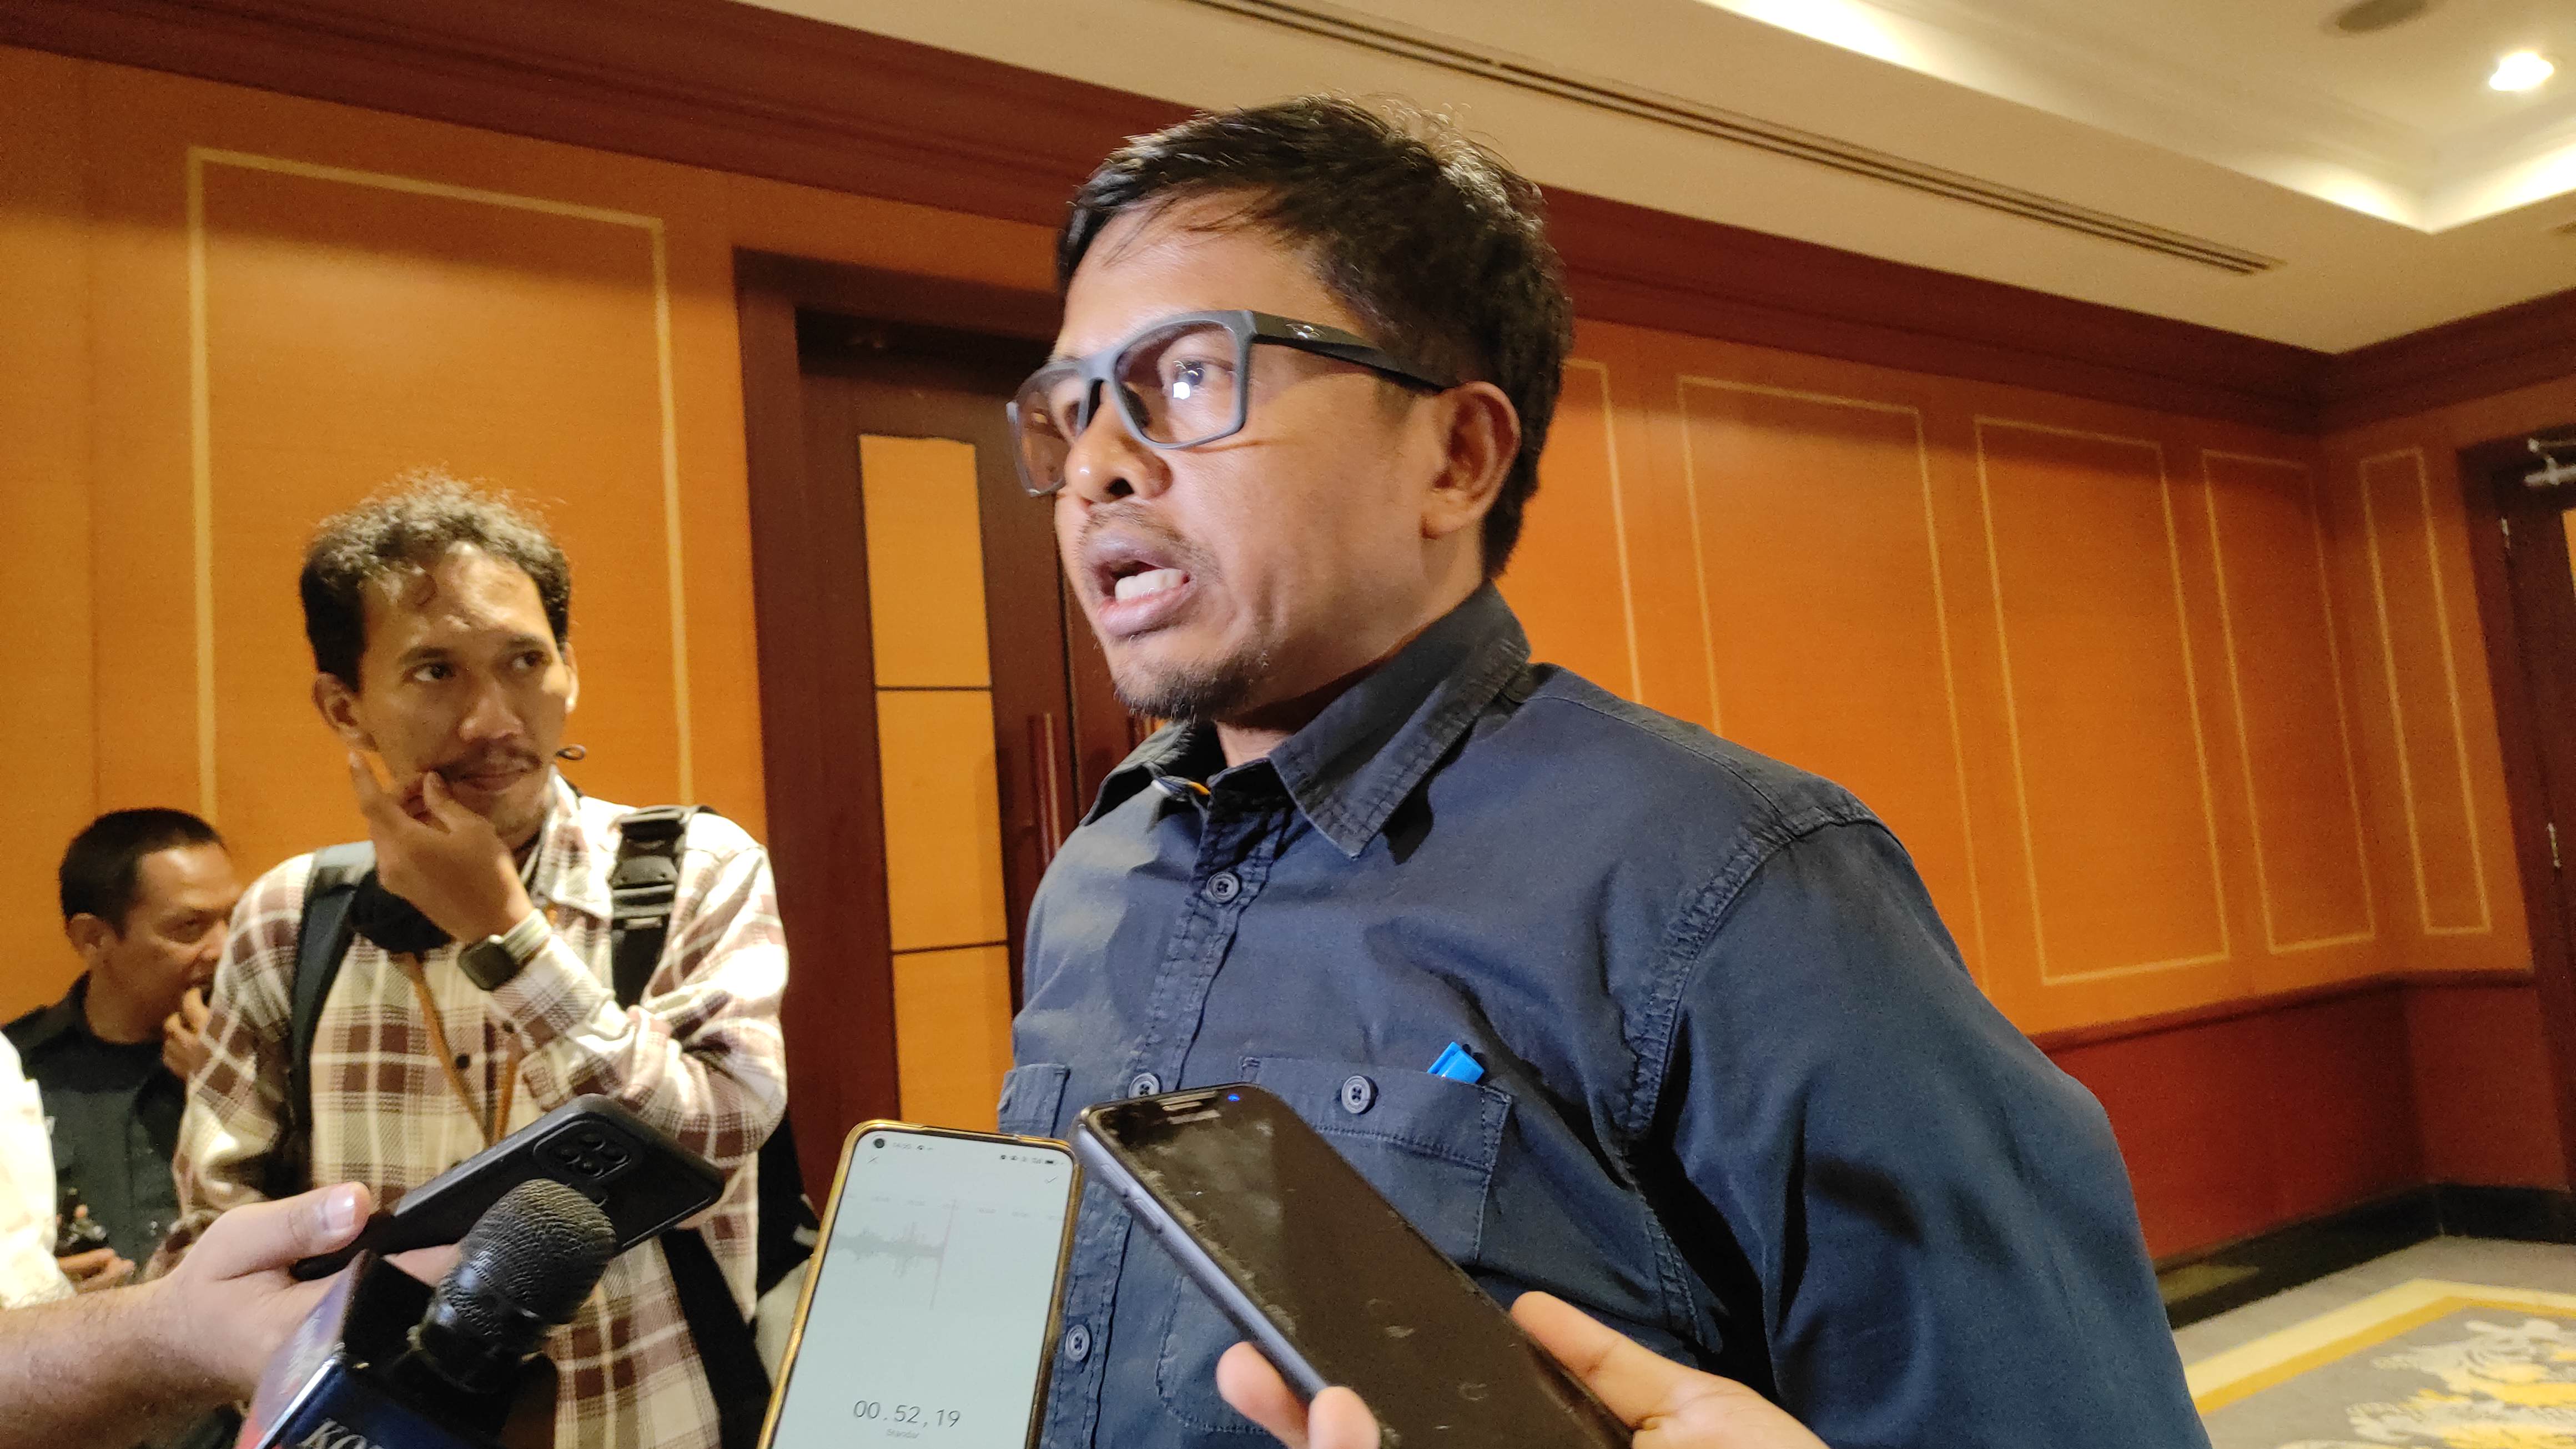 KPU MELAWAN, Ajukan Banding atas Vonis PN Jakpus soal Penundaan Tahapan Pemilu hingga 2025